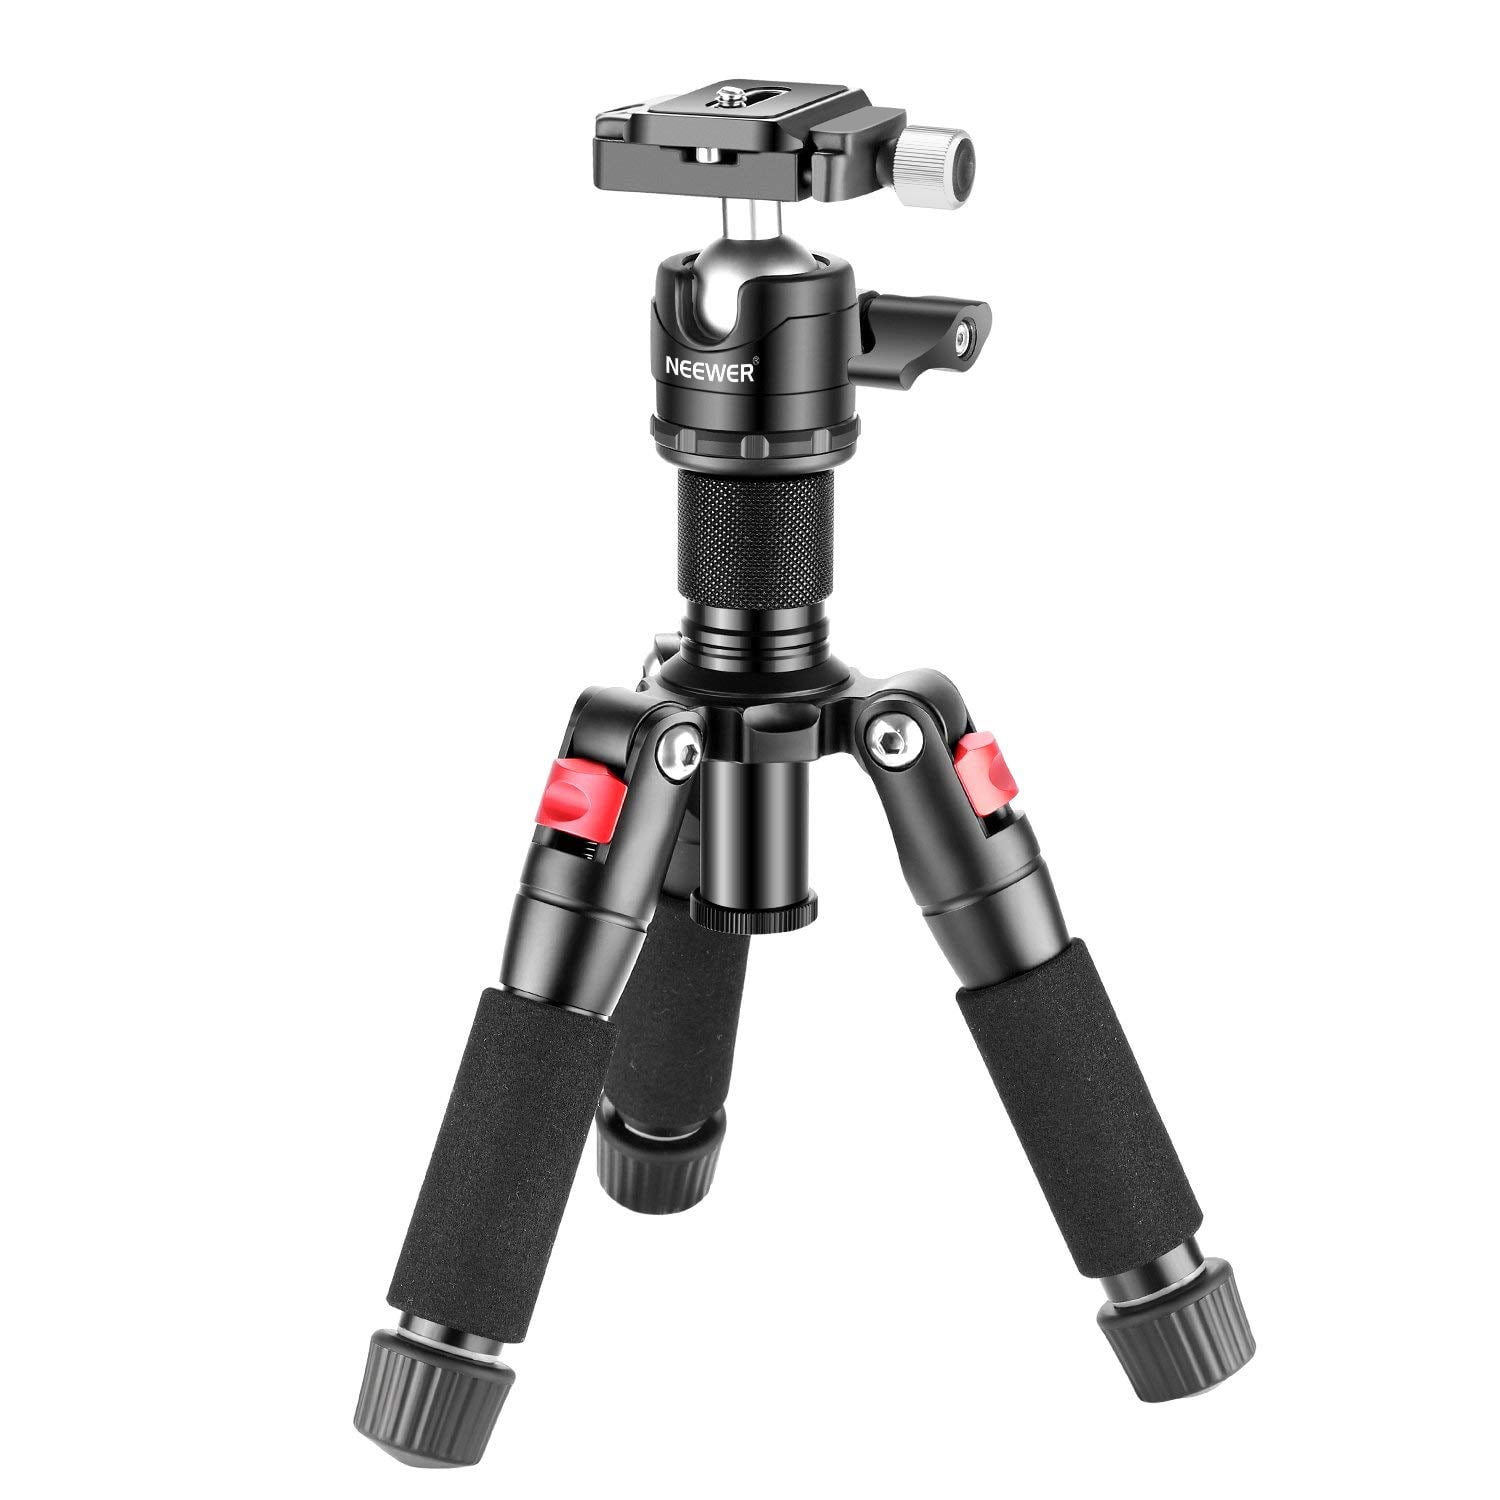 For Panasonic Camera DSLR SLR Mini Flexible Tripod Monopod Mount Stand 1/4-20 